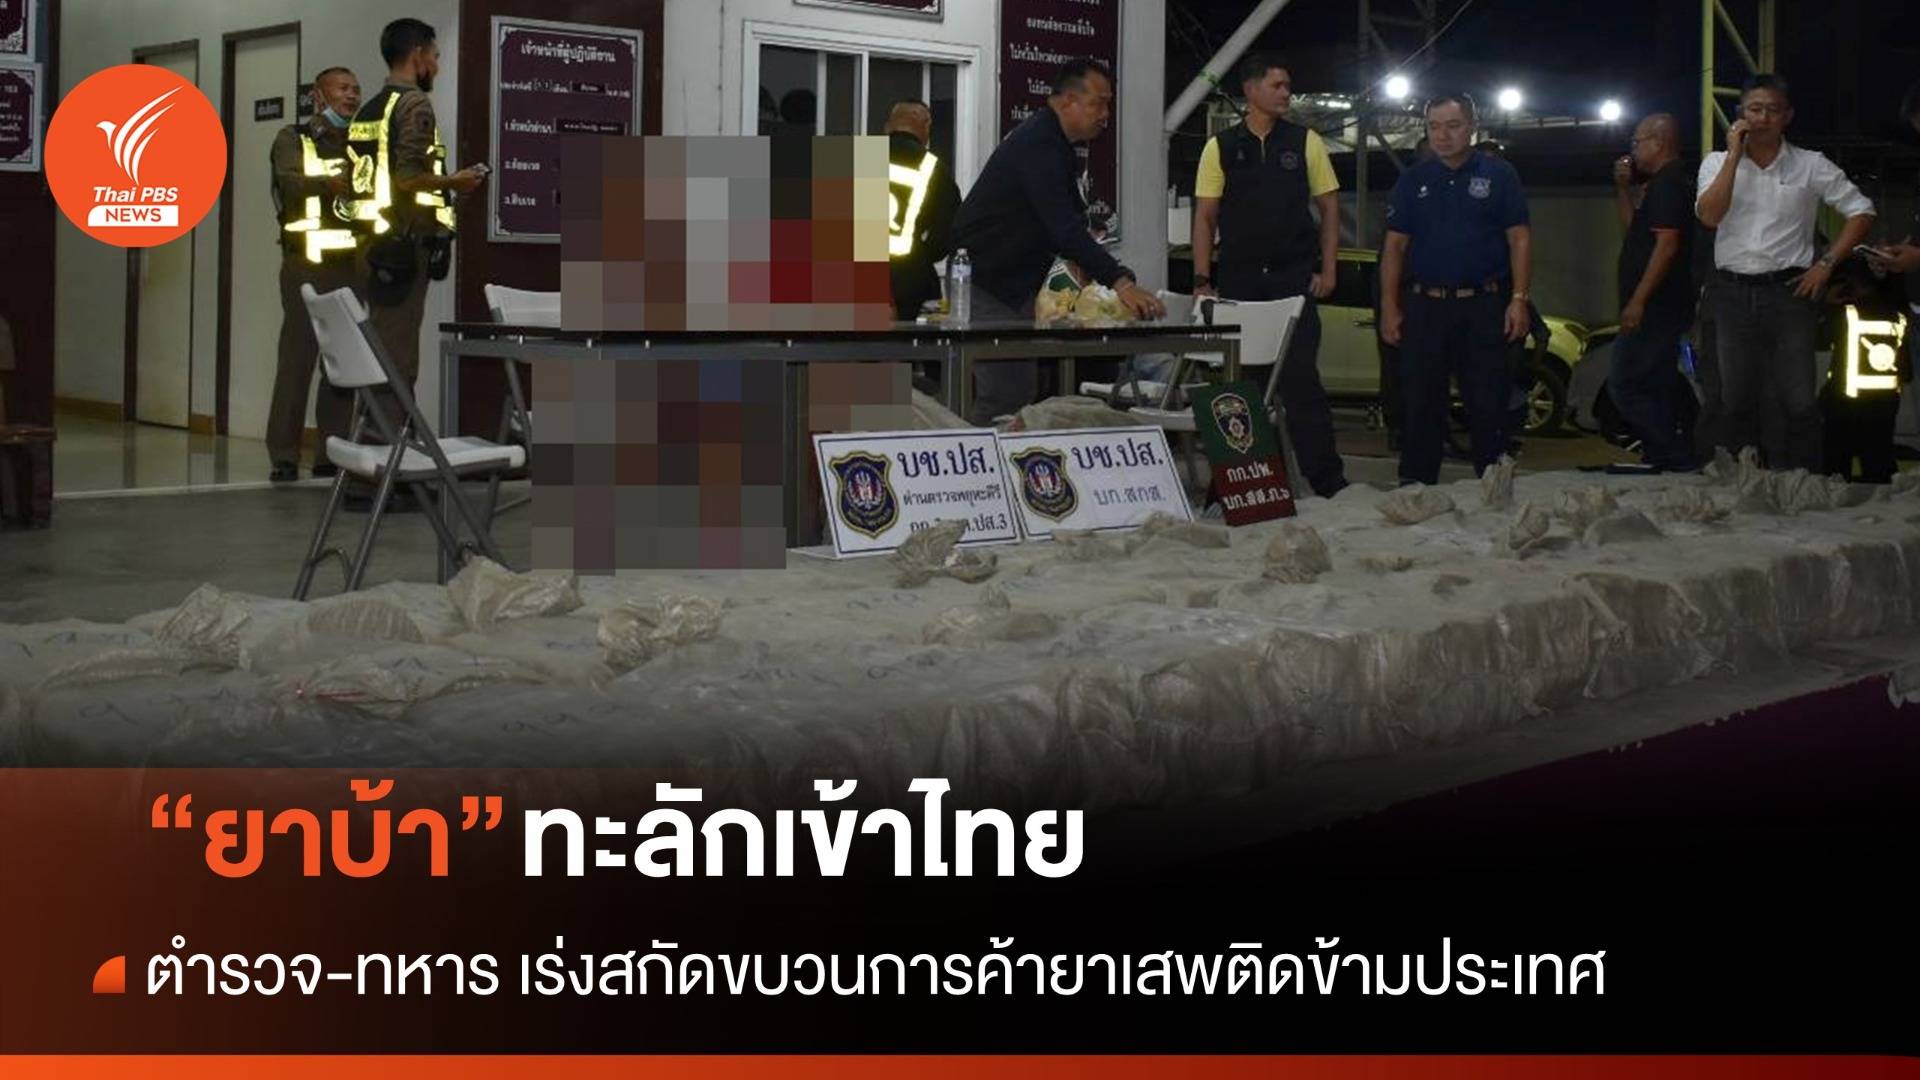 ตำรวจ-ทหารเร่งสกัด "ยาบ้า" ทะลักเข้าไทยจำนวนมาก